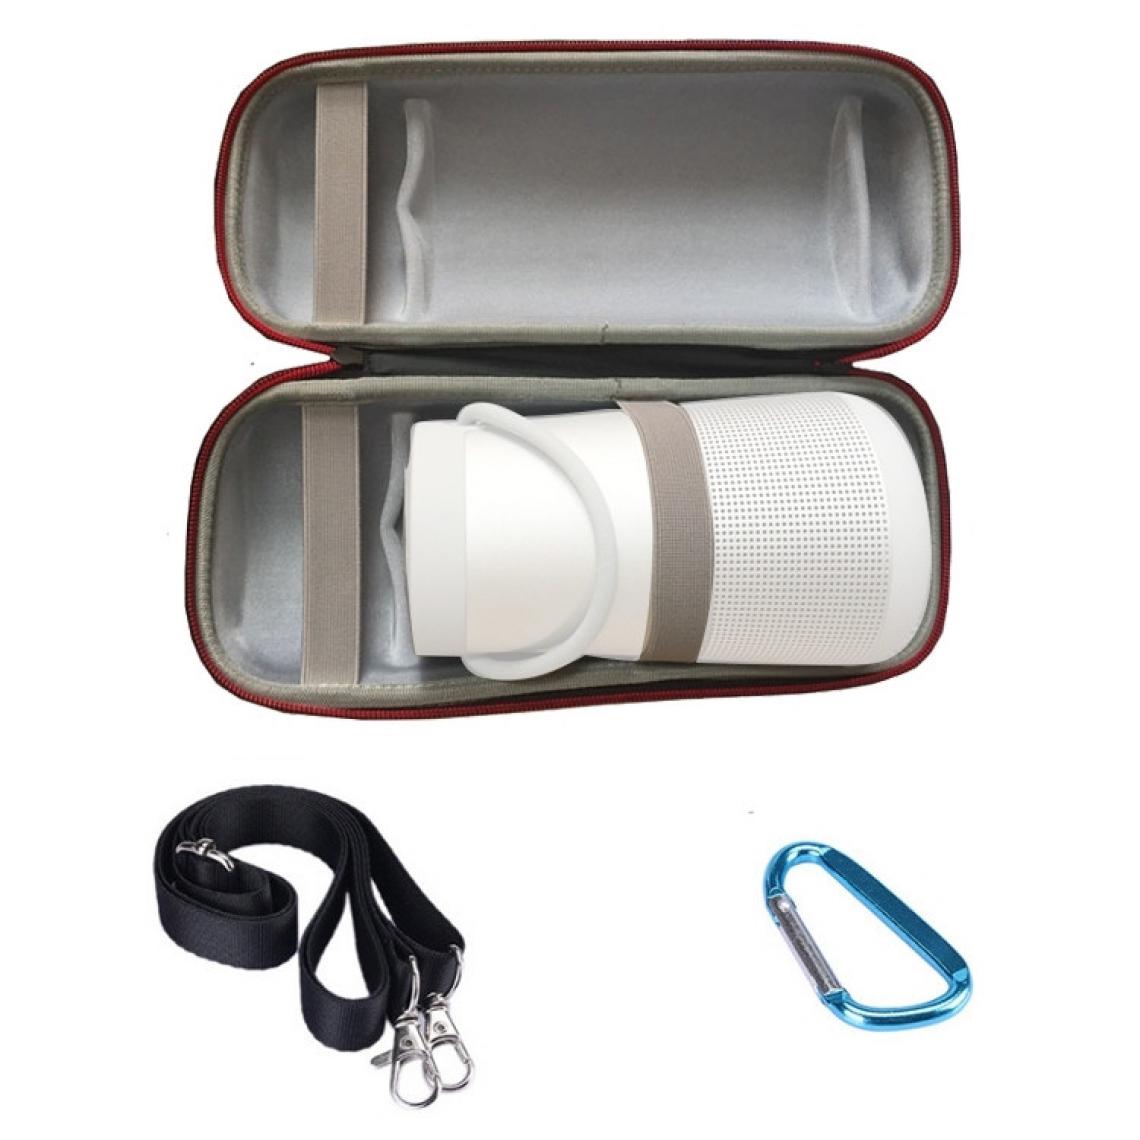 Wewoo - Haut-parleur portable Bluetooth antichoc simple épaule Sac de rangement pour boîte de protection BOSE Soundlink Revolve + Gris noir - Enceintes Hifi